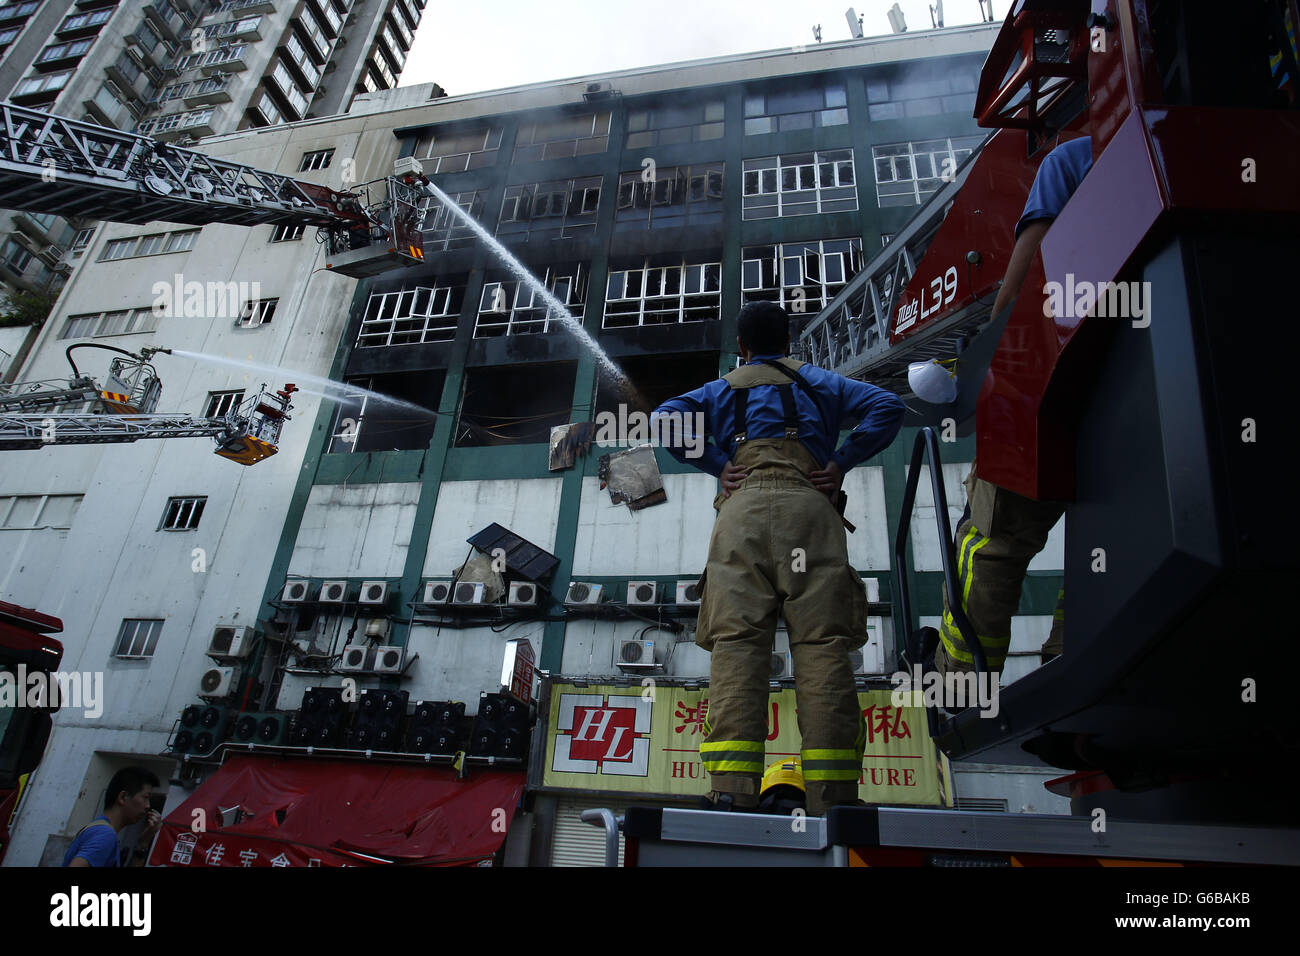 Un violent incendie éclate dans le bâtiment industriel à Hong Kong. L'incendie a éclaté le 21 juin et il est encore à brûler après 60 heures d'efforts pour mettre fin à l'incendie. Incendie persistant réclamés 2 morts et 10 pompiers blessés jusqu'à présent. Le pire incendie sur le territoire au cours des dernières années. Le 24 juin 2016. Hong Kong. 24 Juin, 2016. Liau Chung Ren/ZUMA © Liau Chung Ren/ZUMA/Alamy Fil Live News Banque D'Images